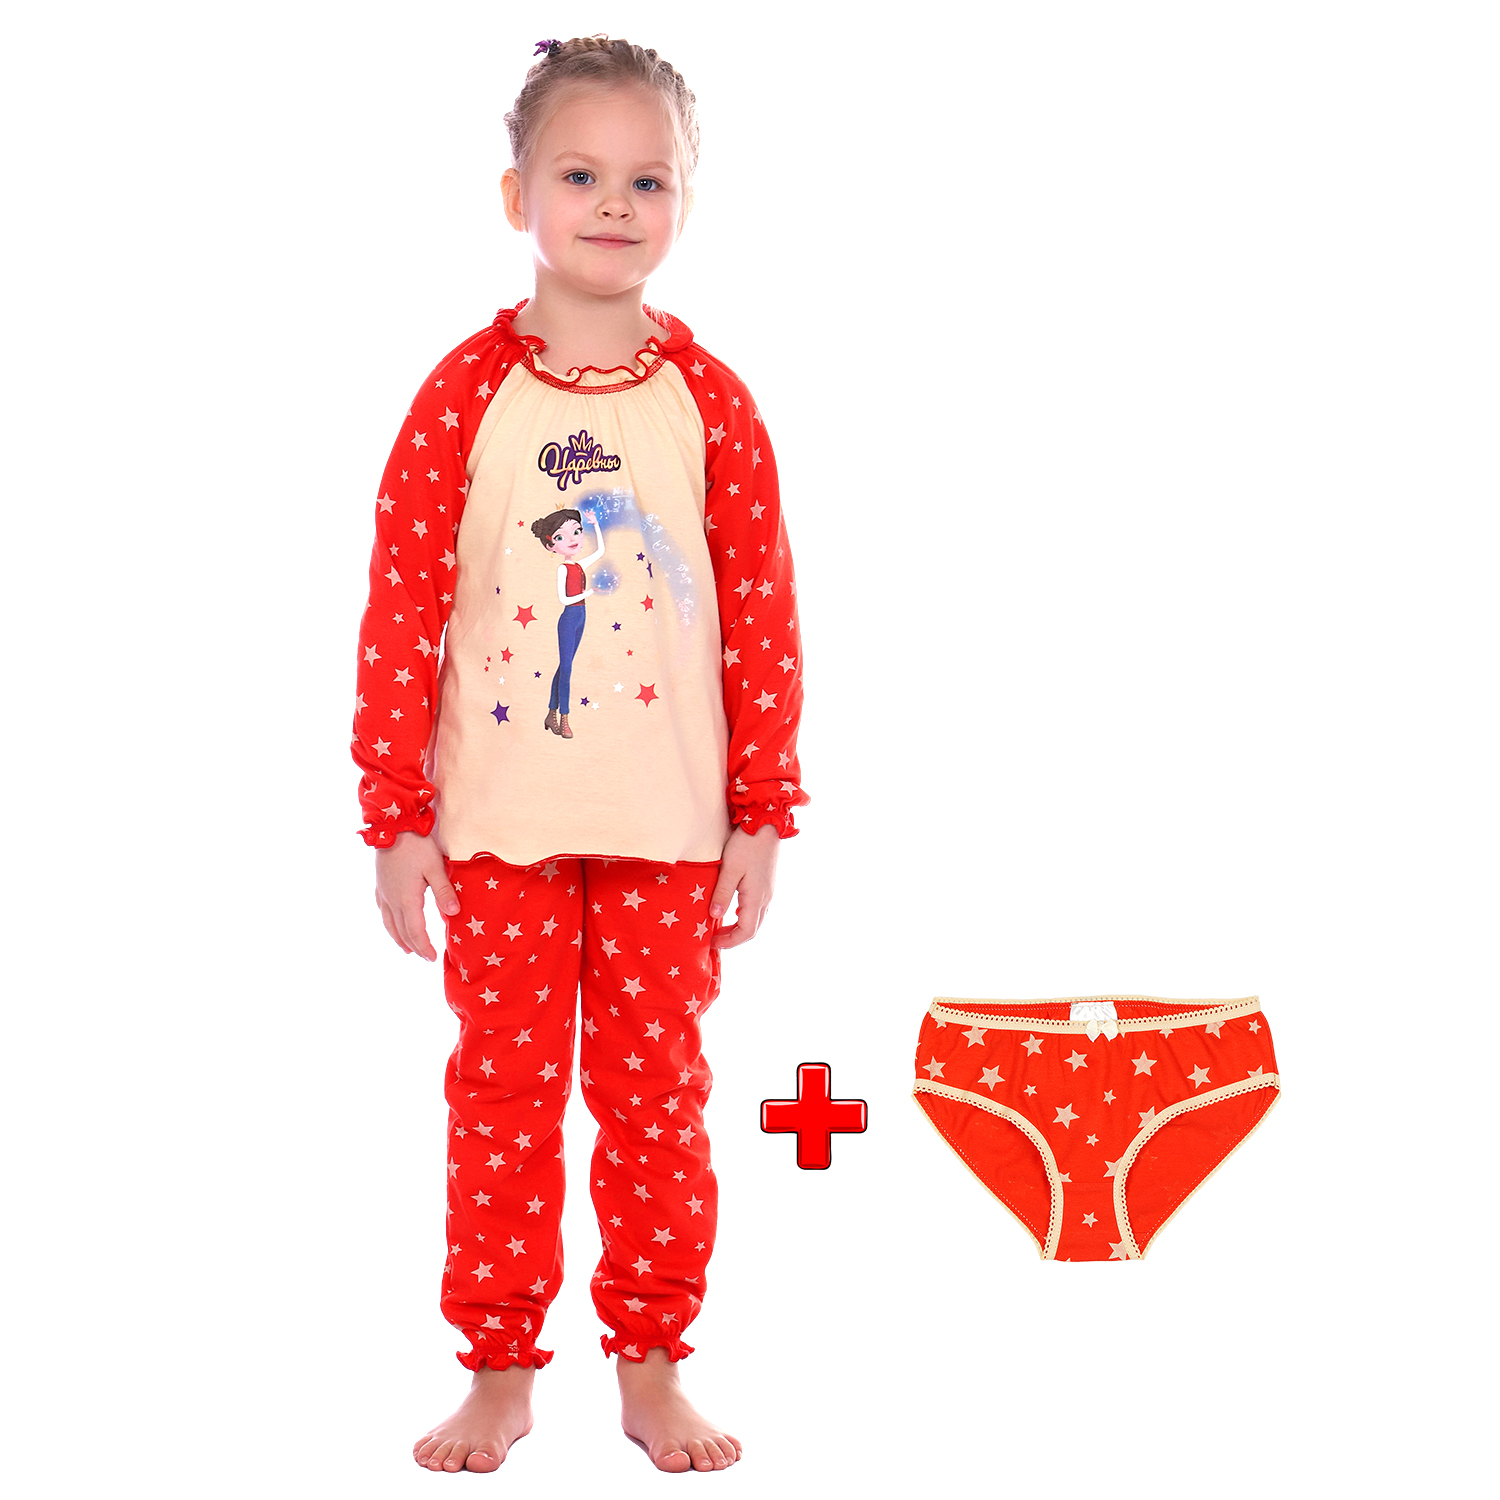 Пижама Детская Одежда S0413К/молочный_красный - фото 2